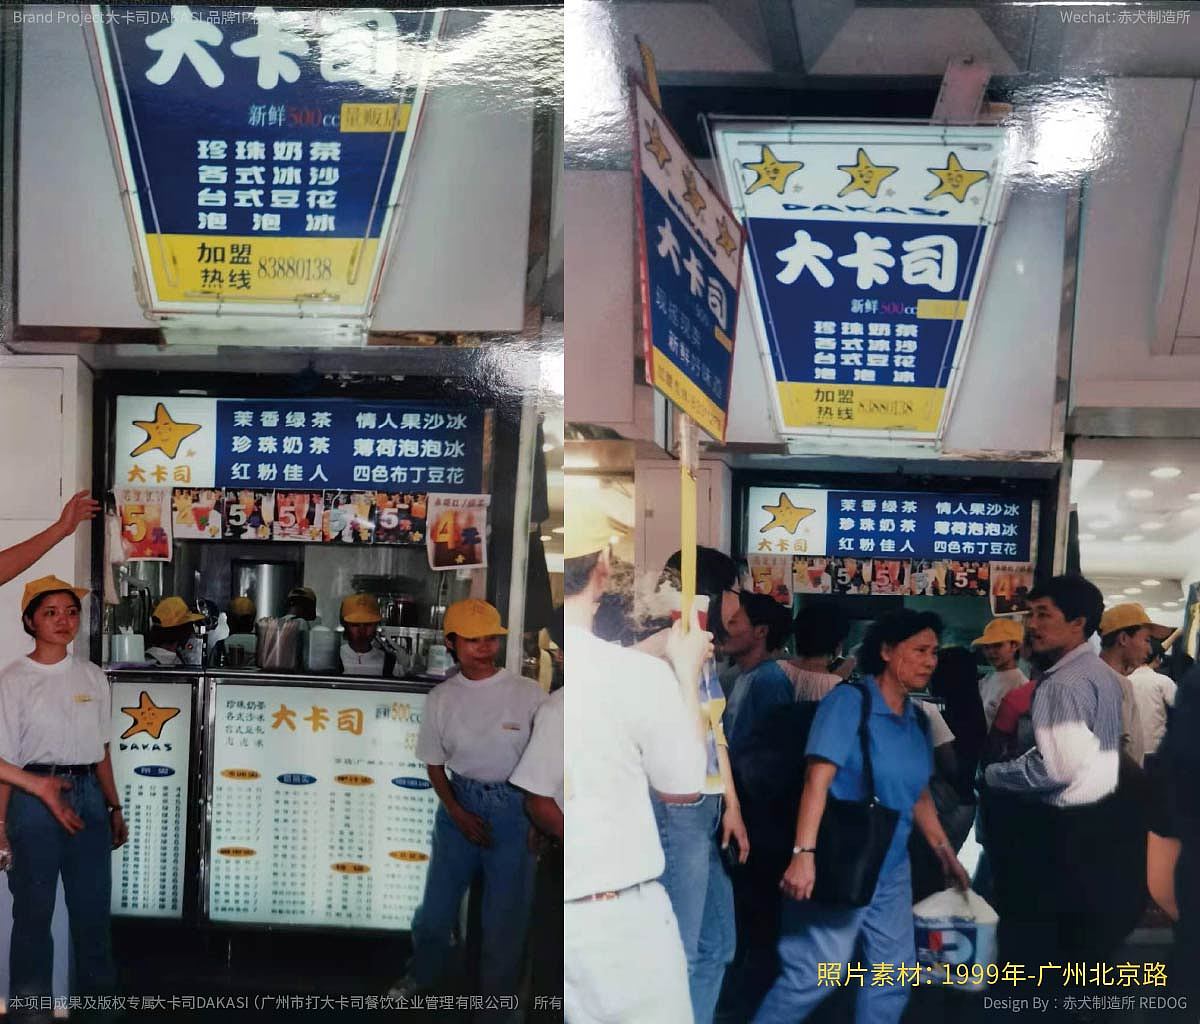 大卡司1990年源起于台湾，1999年5月在北京路开设全国第一家台湾外带式连锁饮品店。是国内最早一批连锁品牌，是那个年代广州人的第一杯奶茶，是最初被年轻人追捧的奶茶品牌。